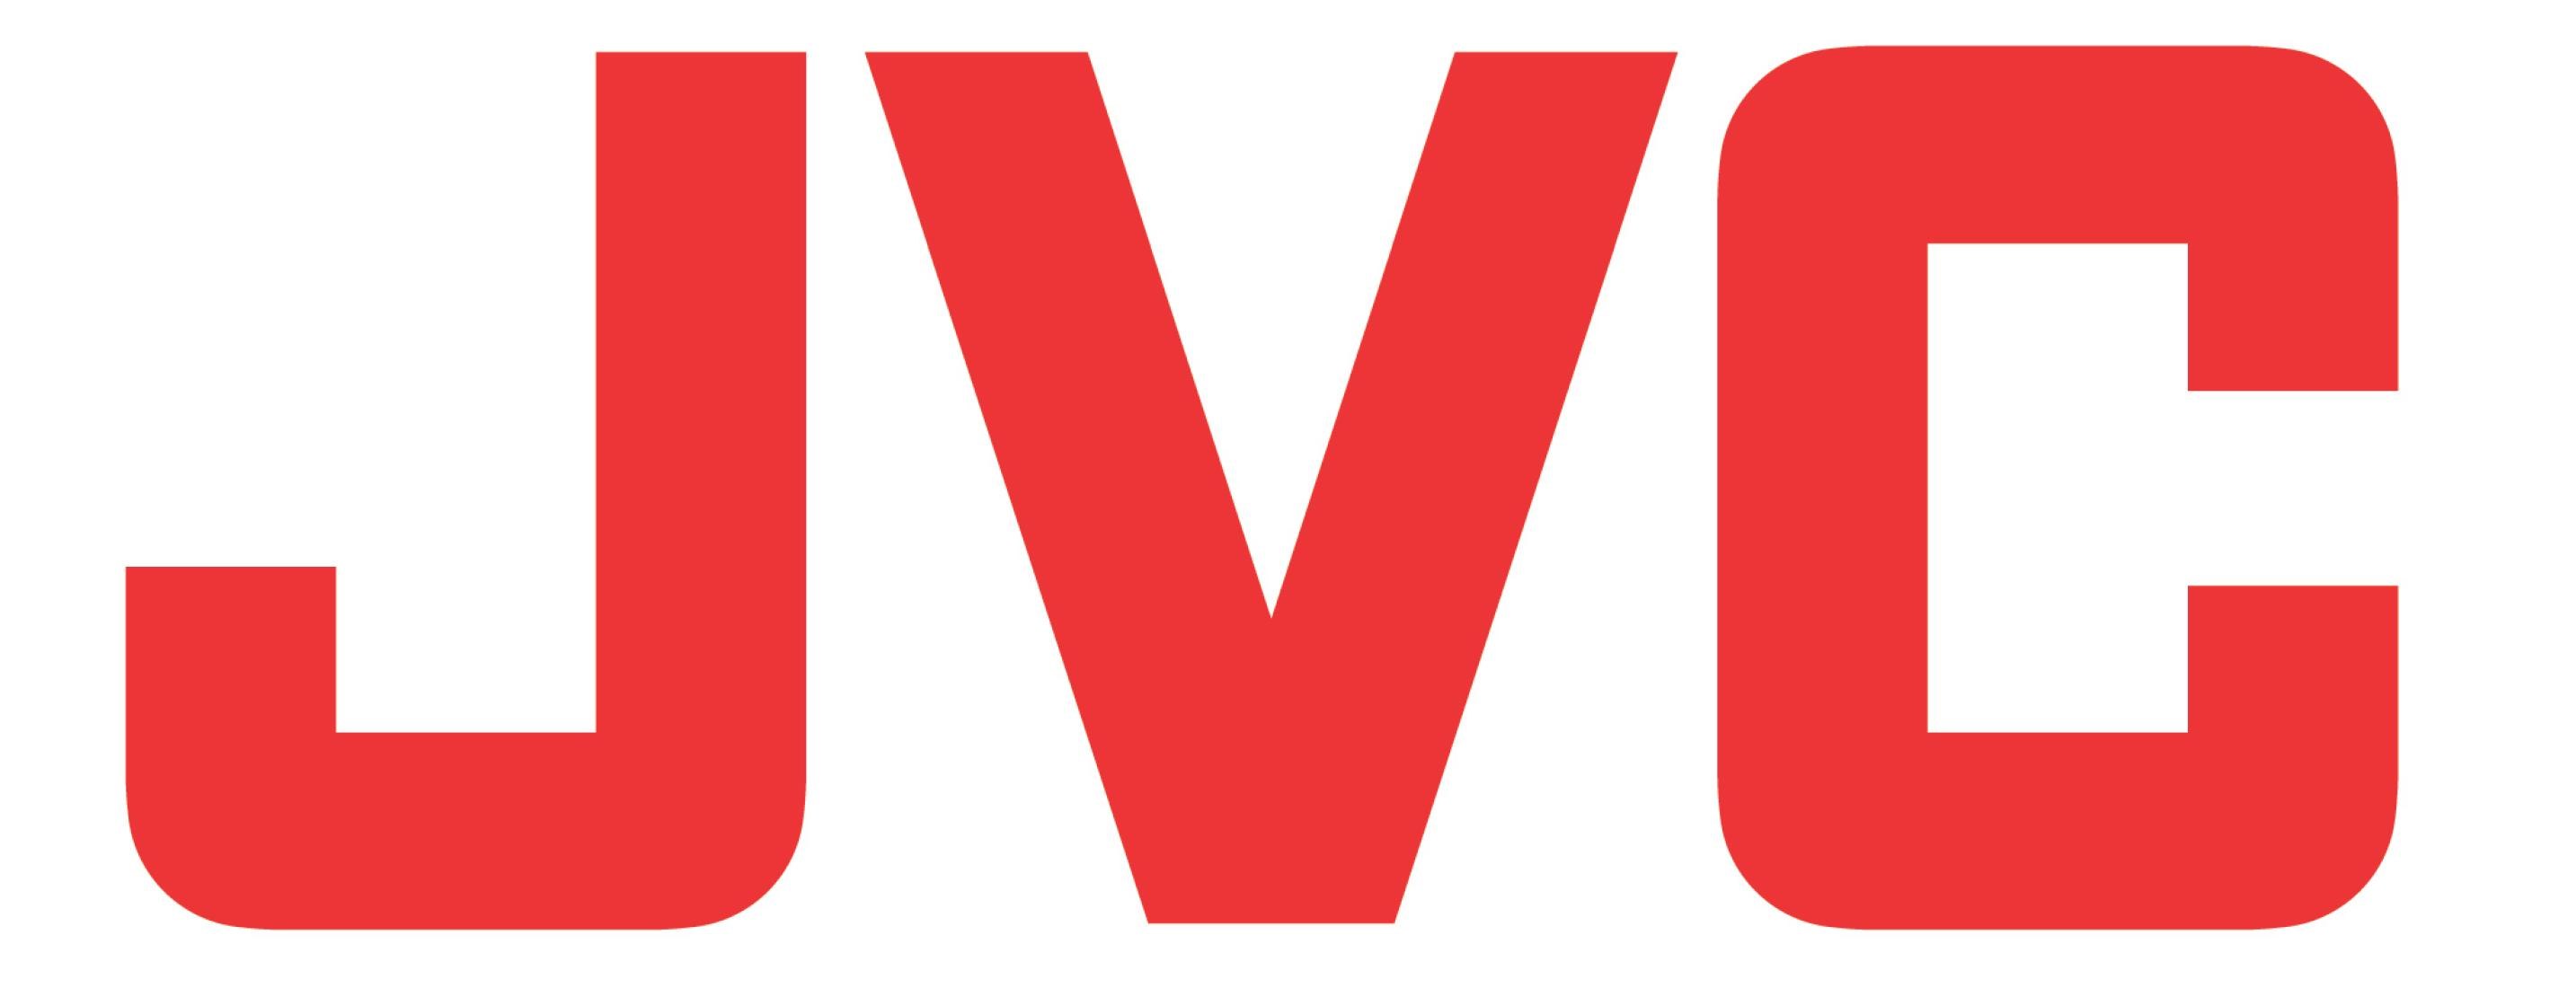 Jvc-logo.jpg